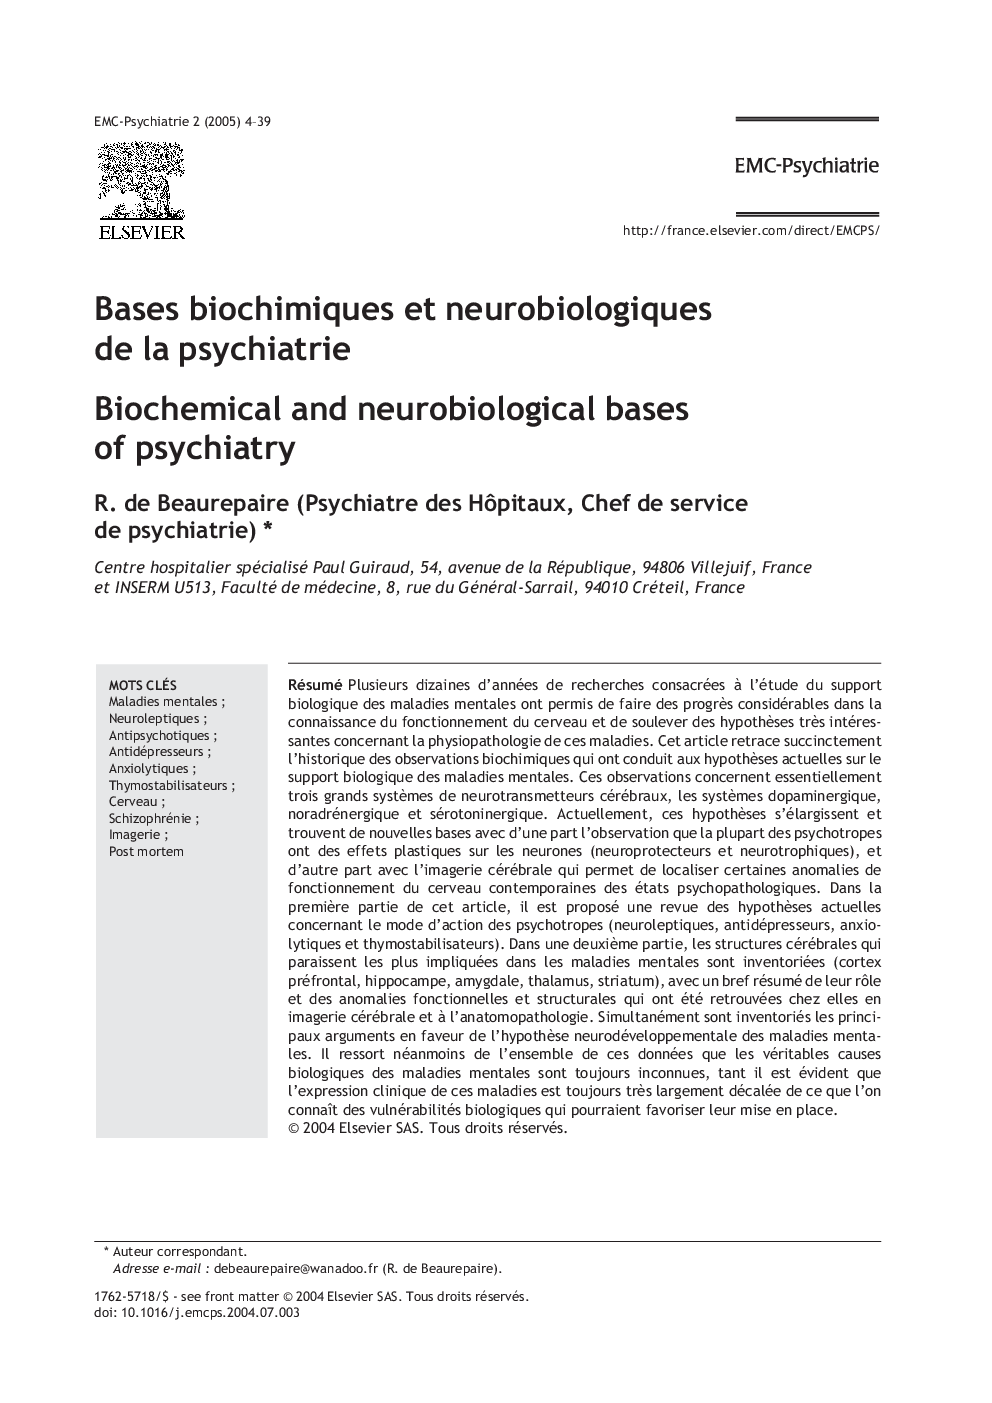 Bases biochimiques et neurobiologiques de la psychiatrie